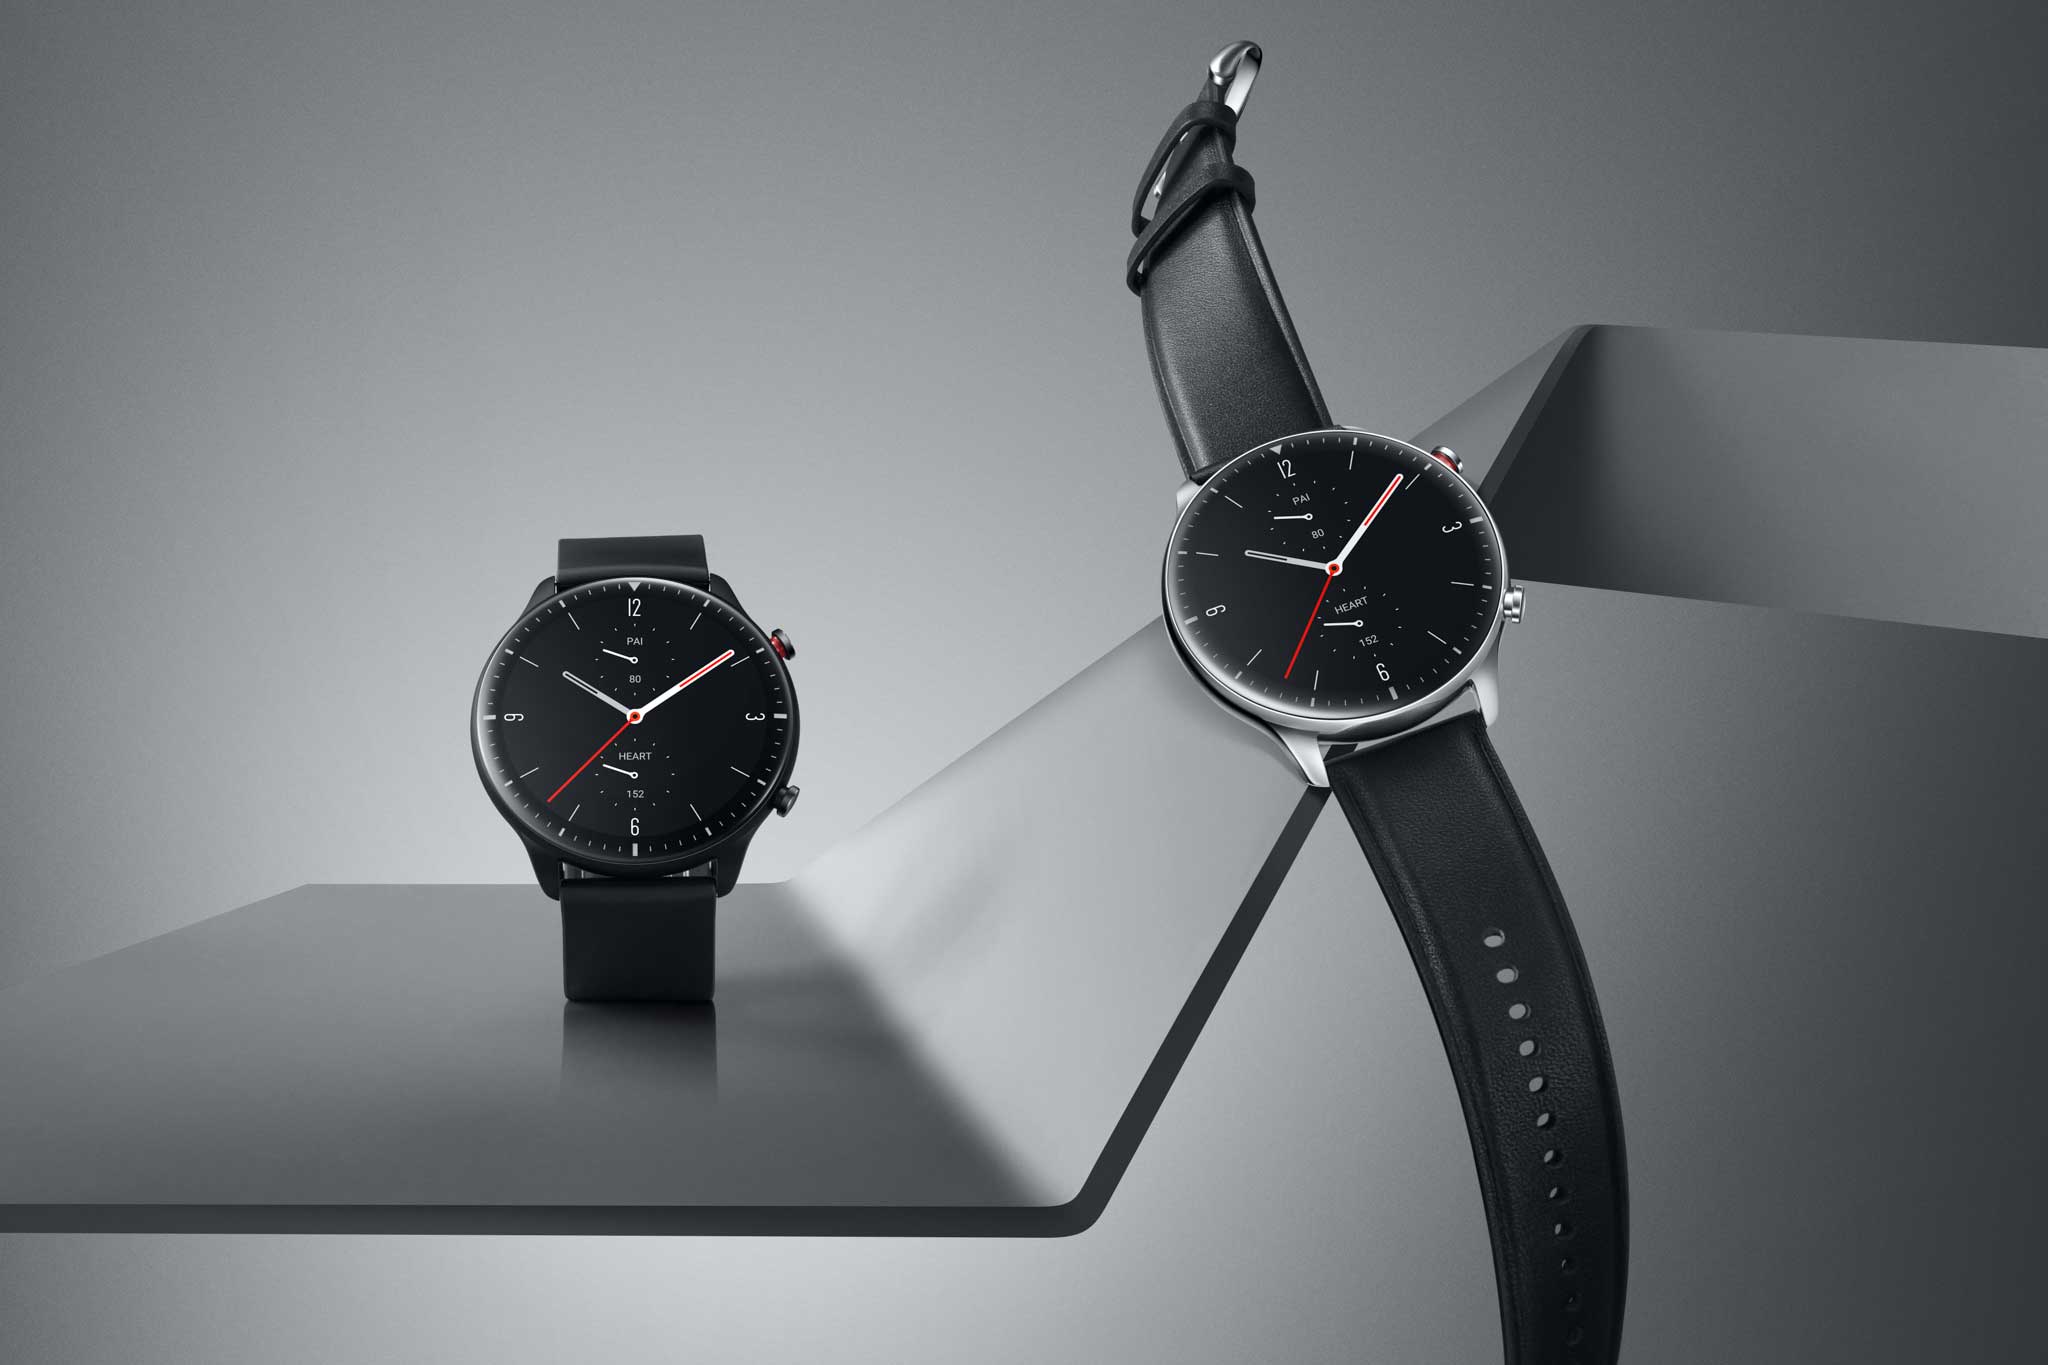 Huami chính thức ra mắt bộ đôi đồng hồ thông minh Amazfit GTS và GTR thế hệ thứ 2 tại Việt Nam